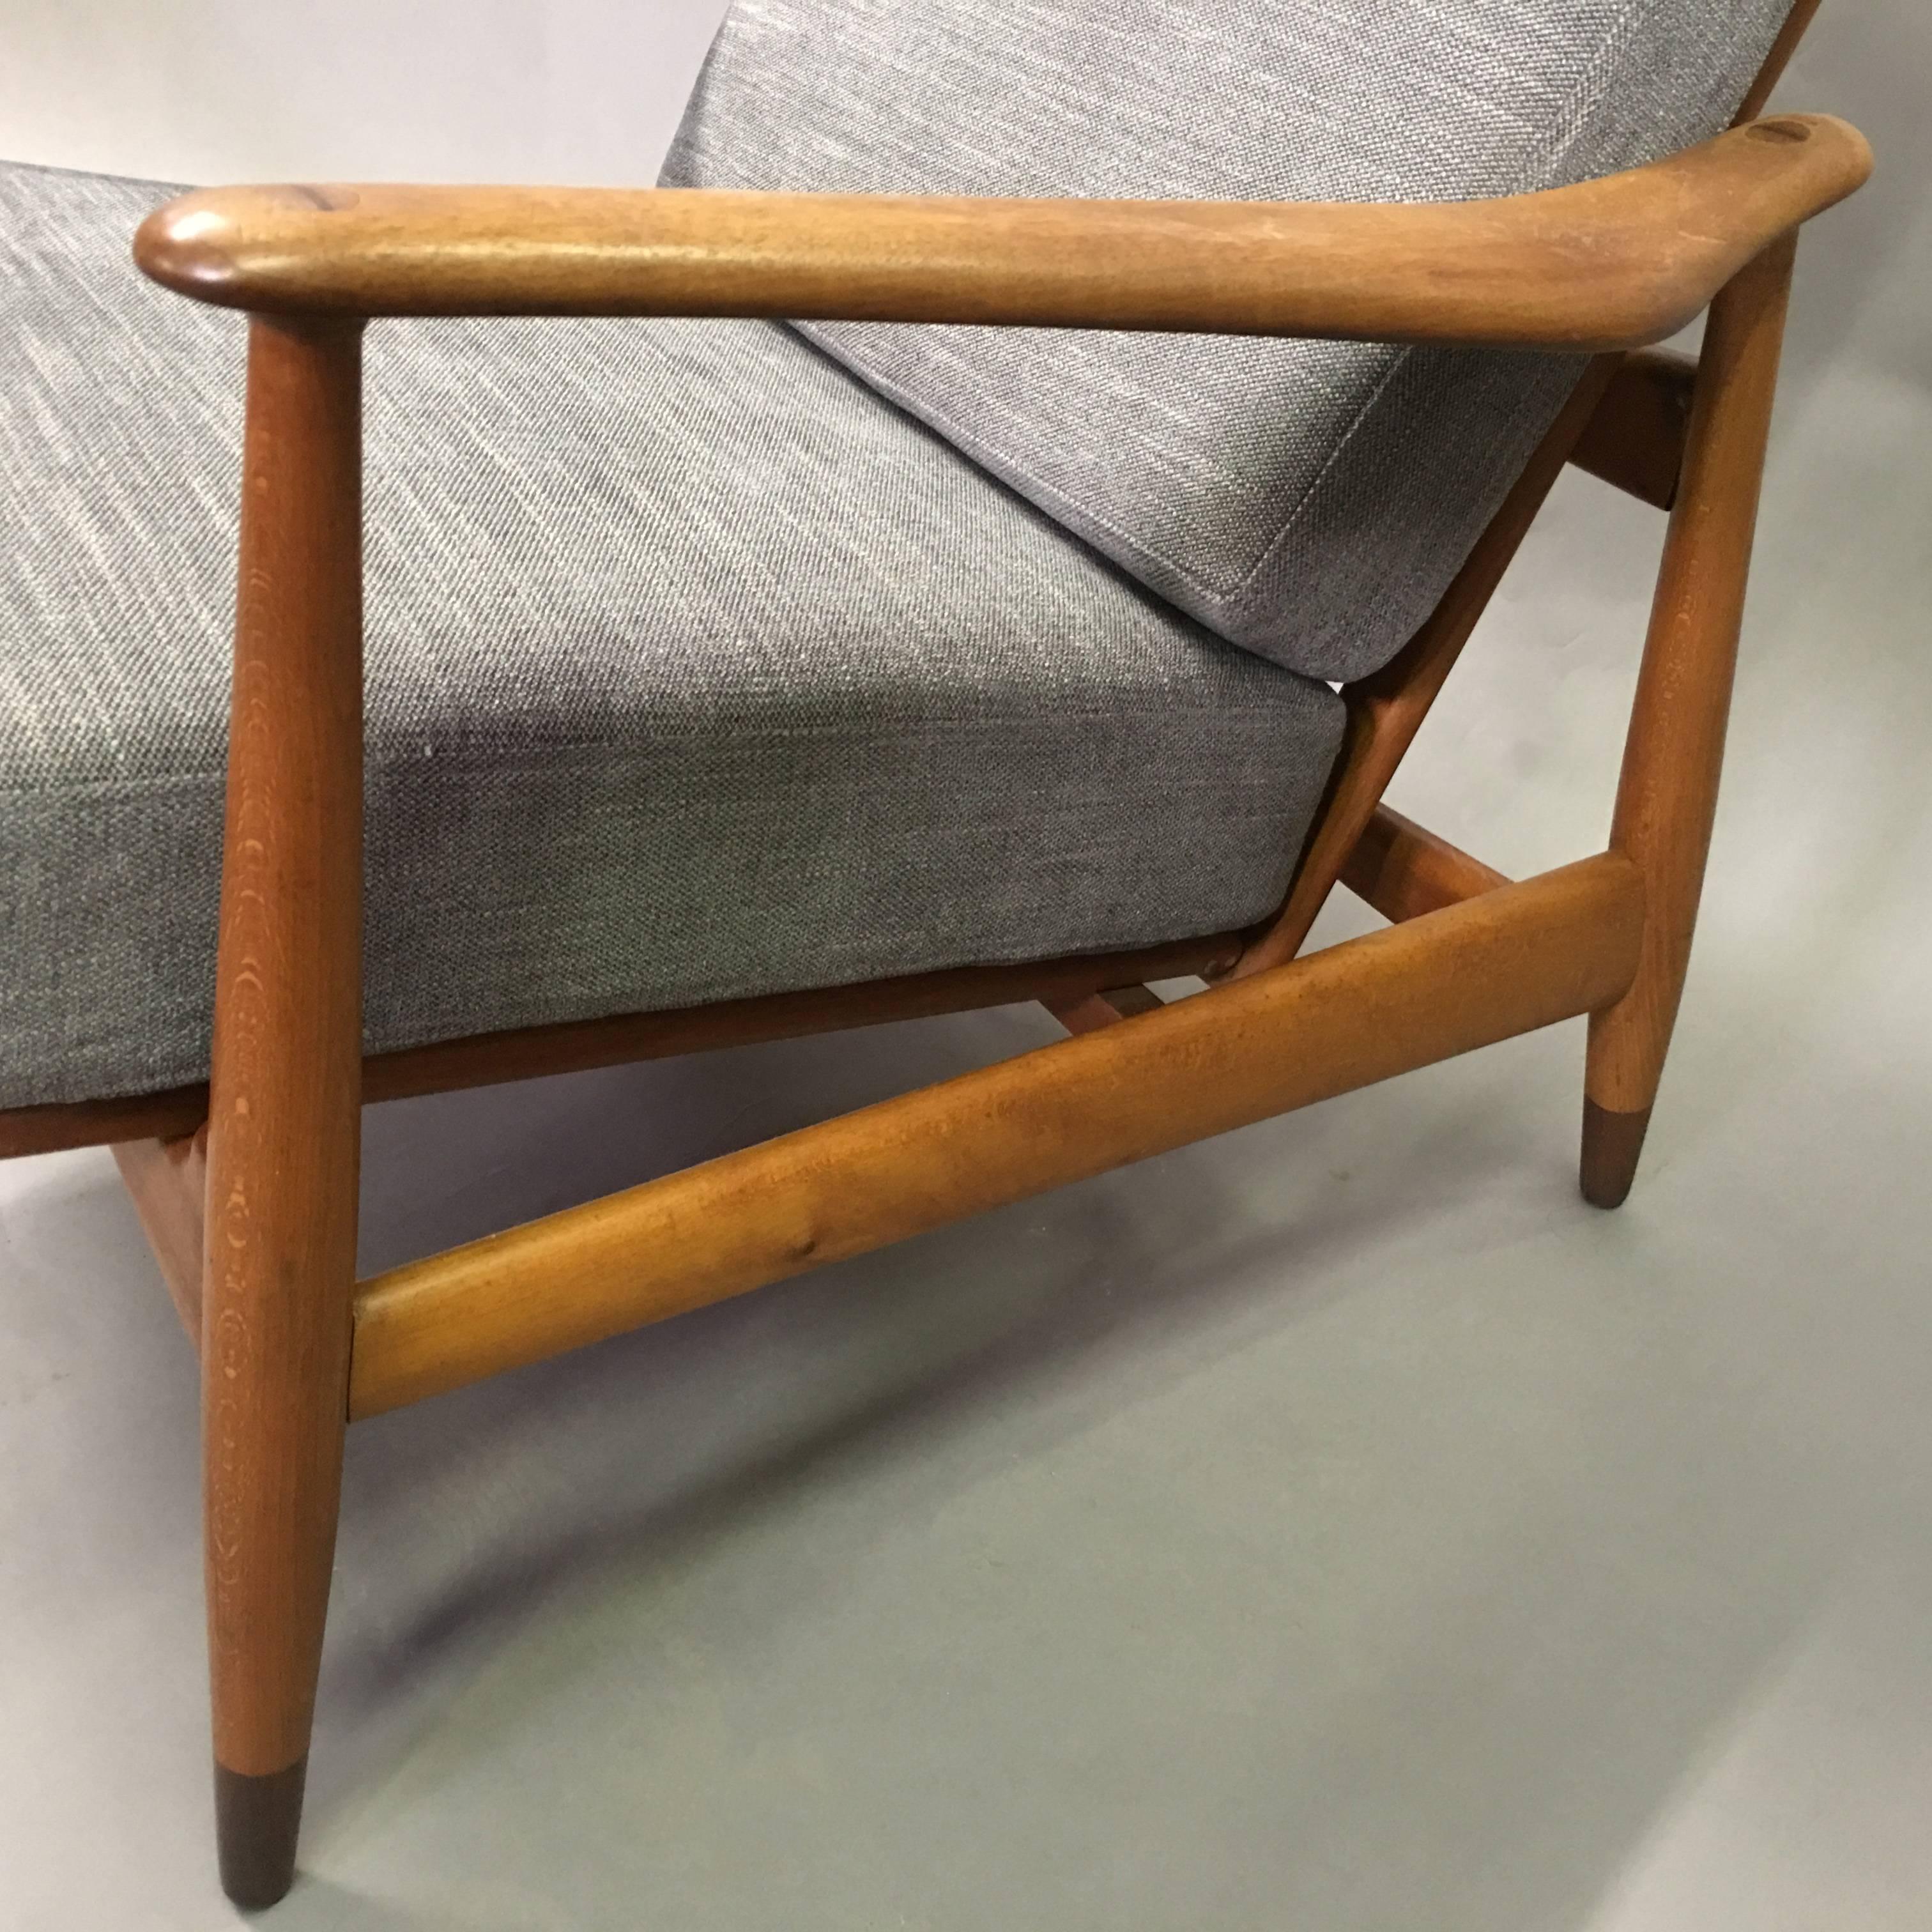 Pair of Danish Modern Lounge Chairs by Finn Juhl for John Stuart 1